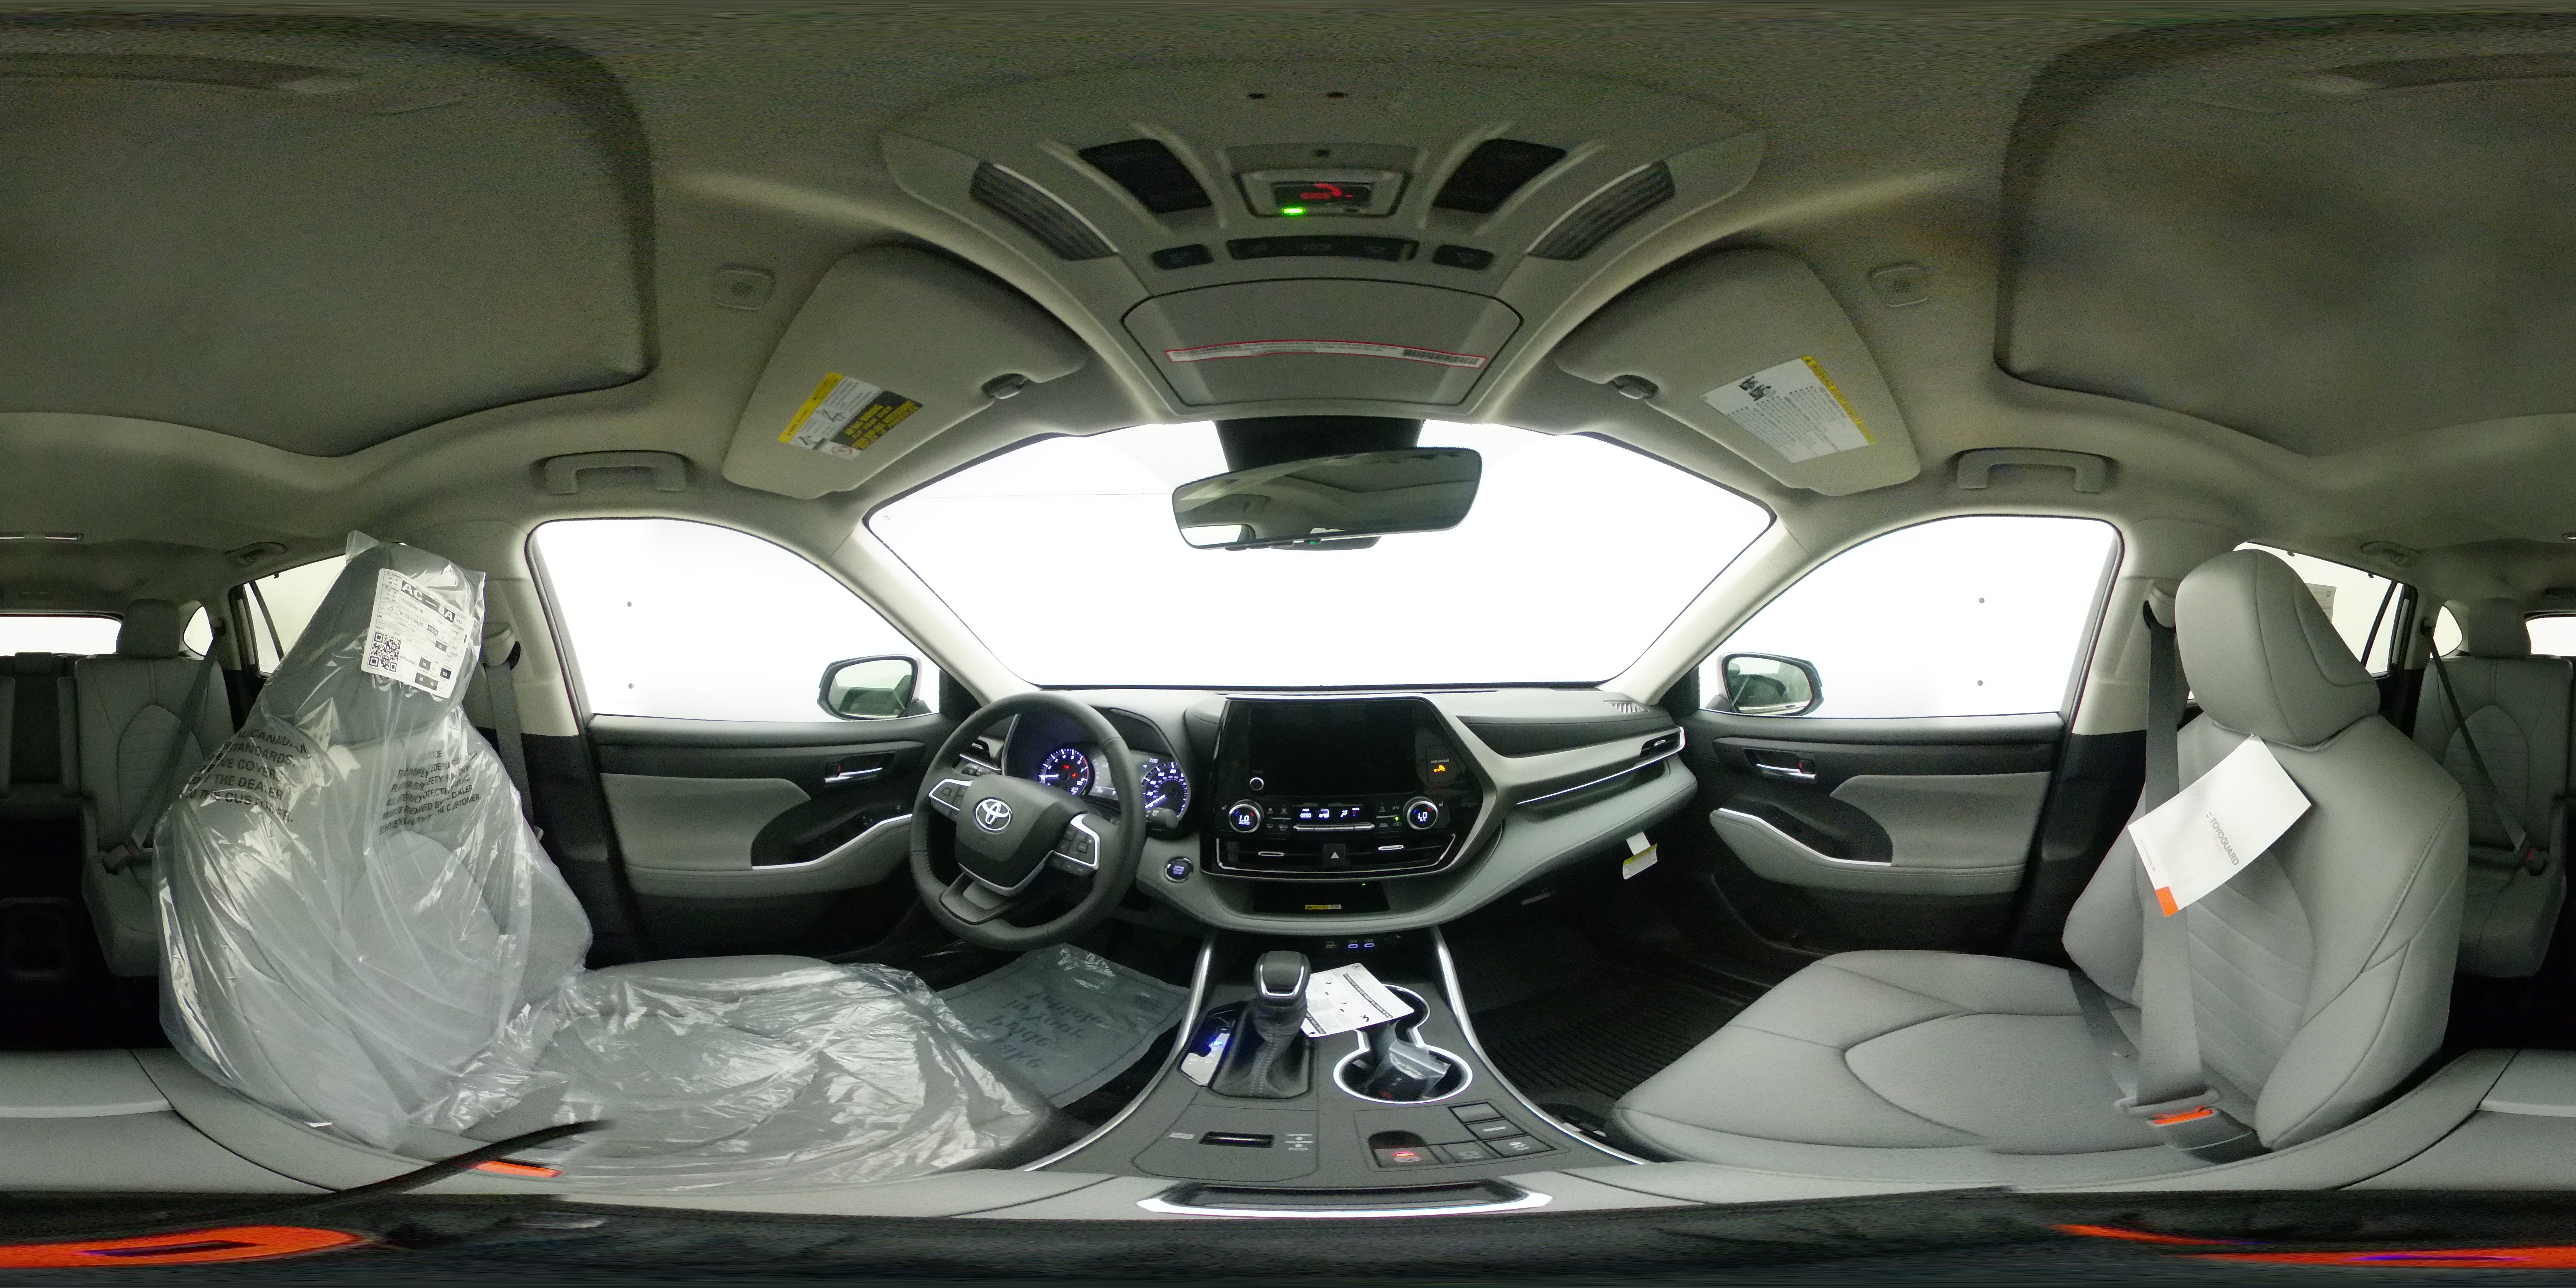 New 2023 CELESTIAL SILVER METALLIC Toyota XLE 360 Panorama 1